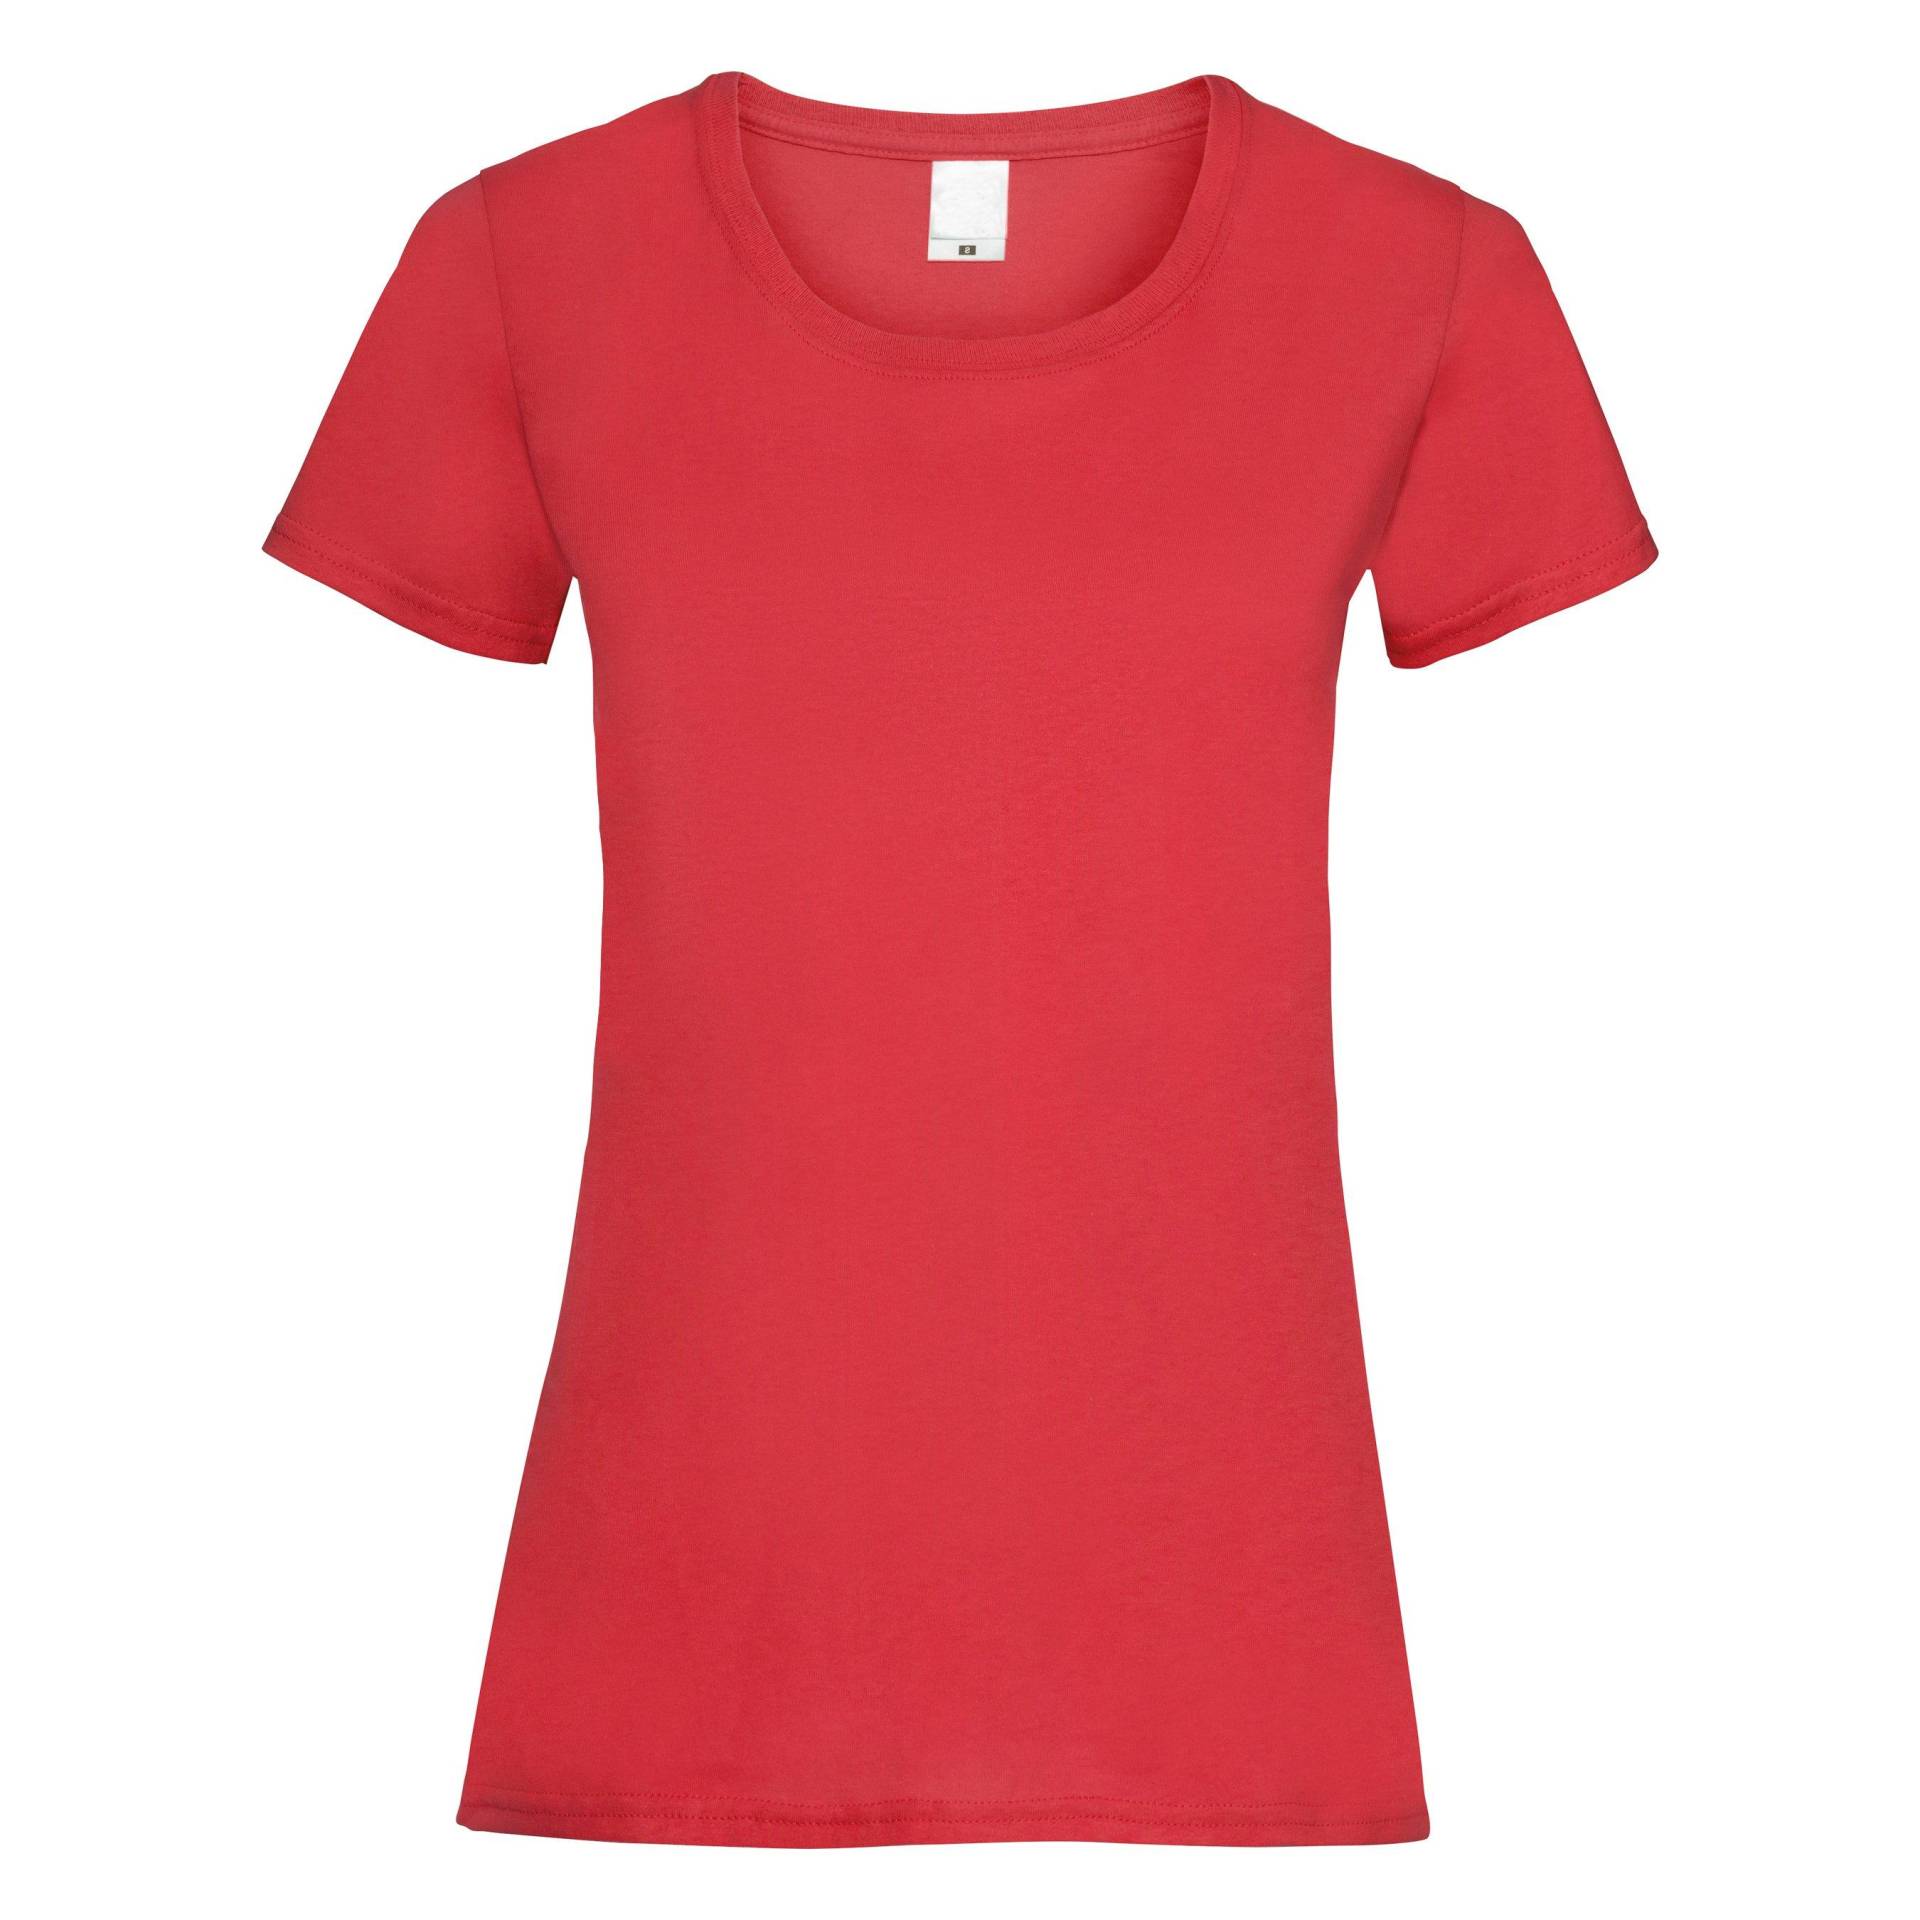 Kurzarm Tshirt Damen Rot Bunt M von Universal Textiles